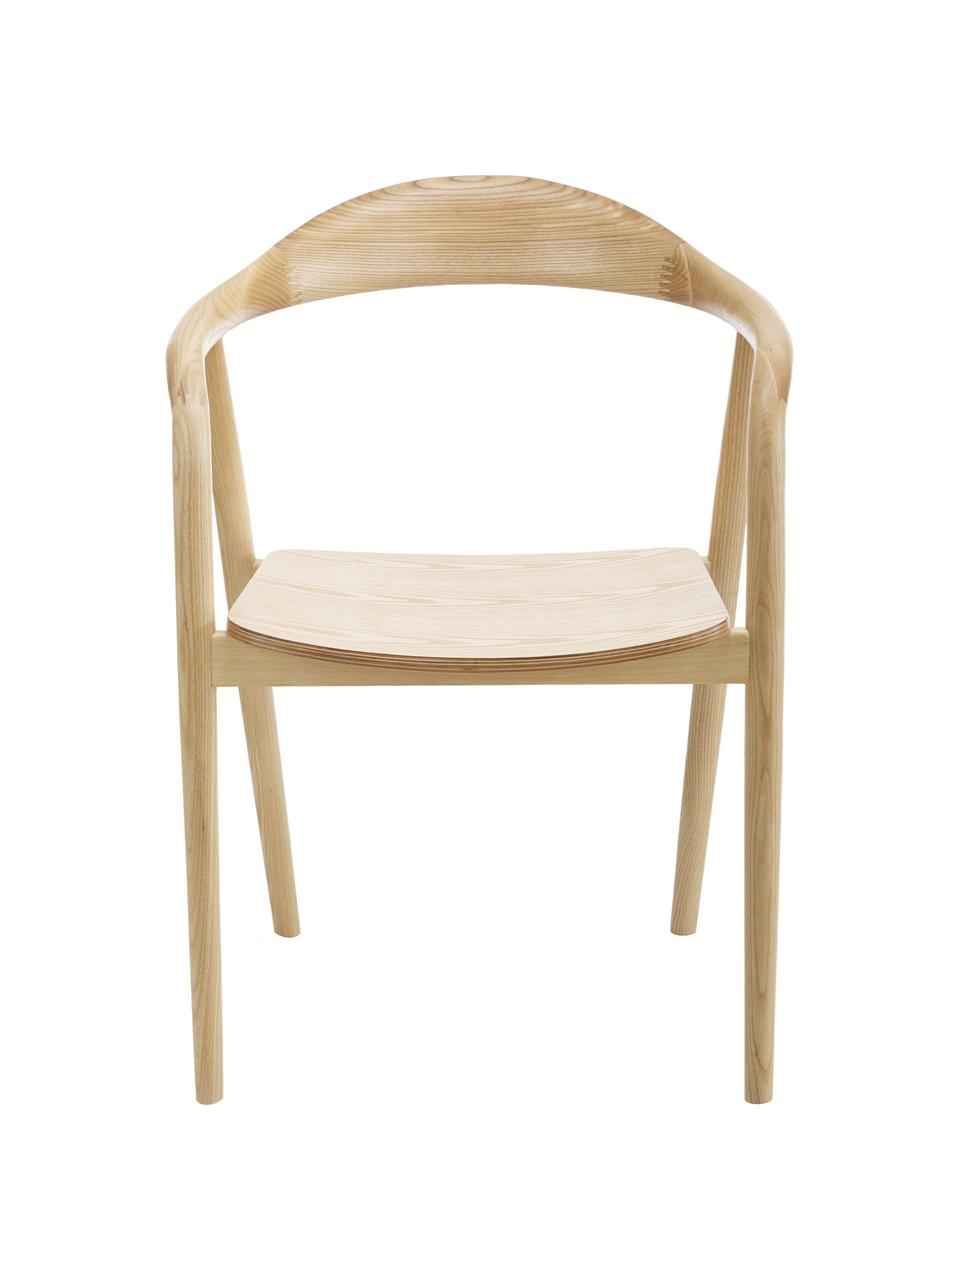 Houten fauteuil Angelina, Essenhout gelakt, FSC-gecertificeerd
Multiplex gelakt, FSC-gecertificeerd, Licht essenhout, B 57 x H 80 cm